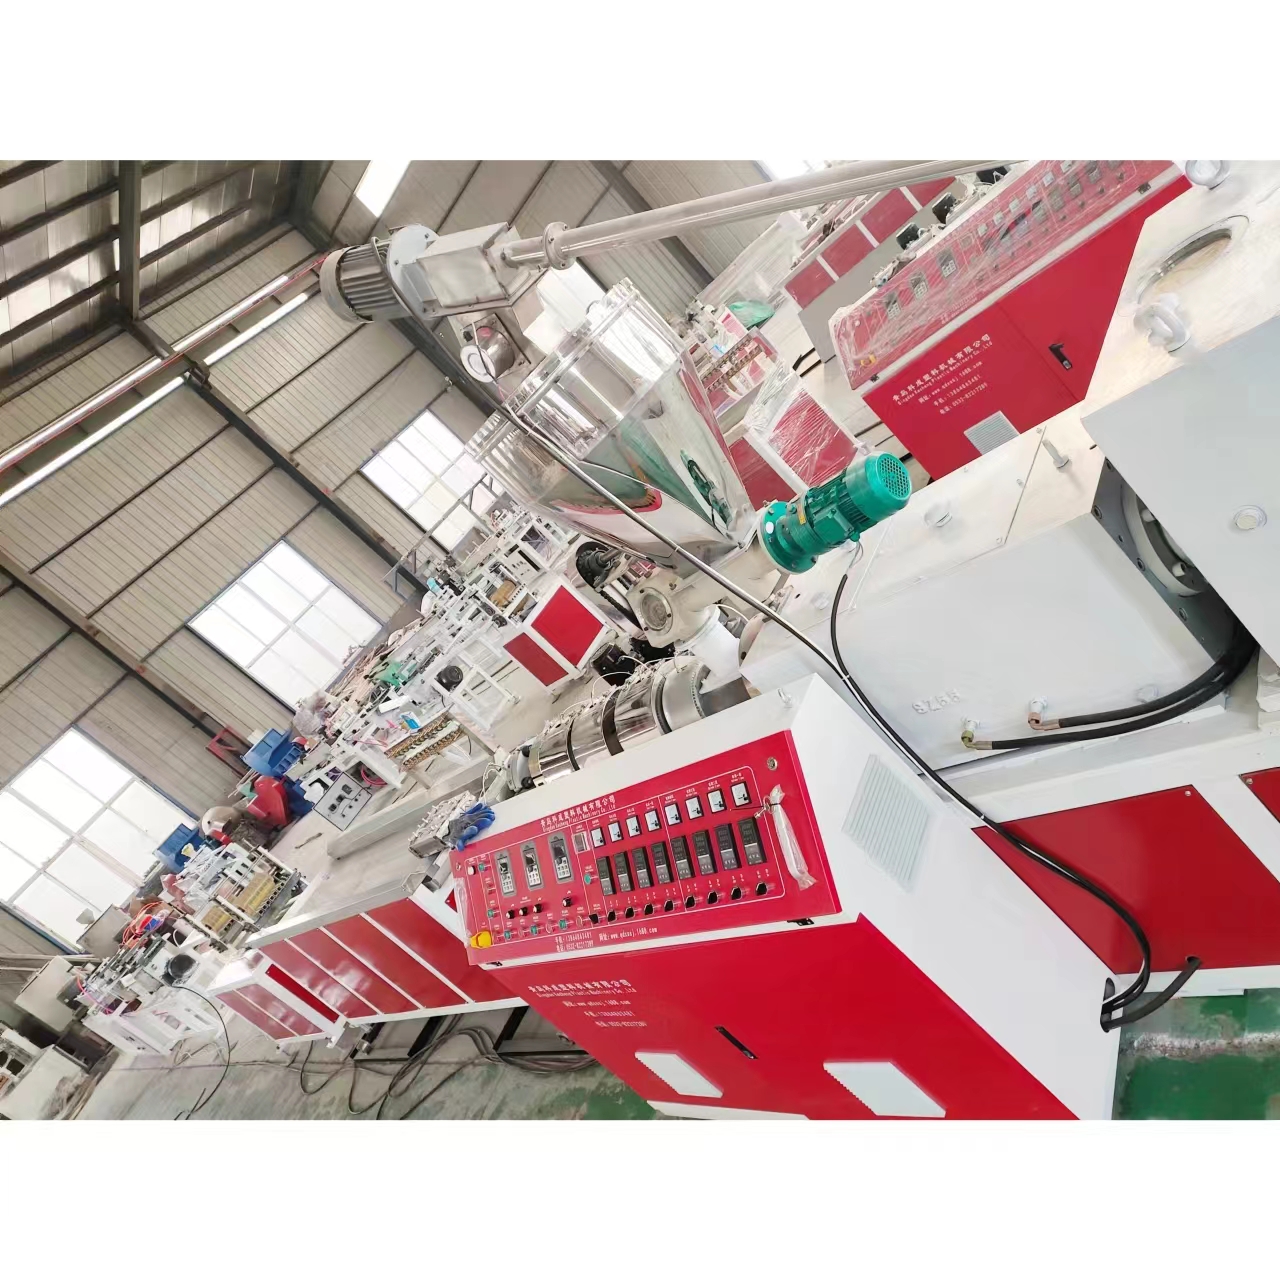 青岛科成塑机供应PPR管材生产线设备保修一年